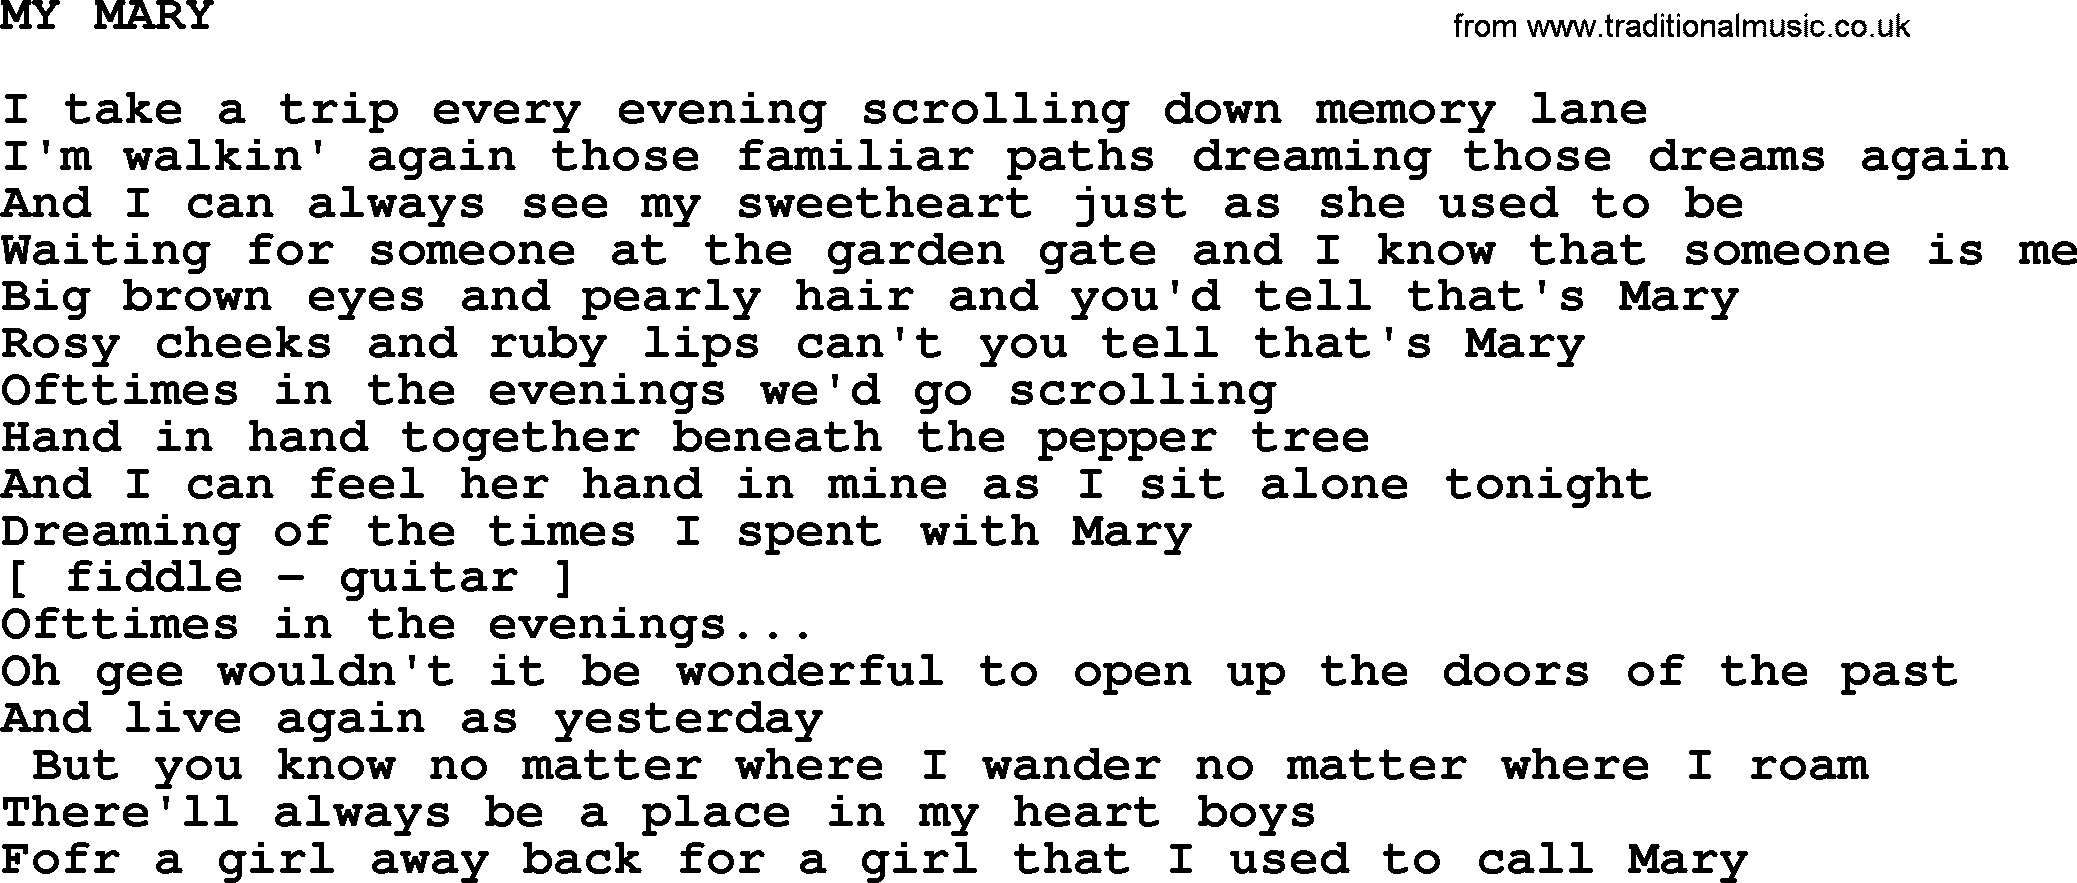 Merle Haggard song: My Mary, lyrics.